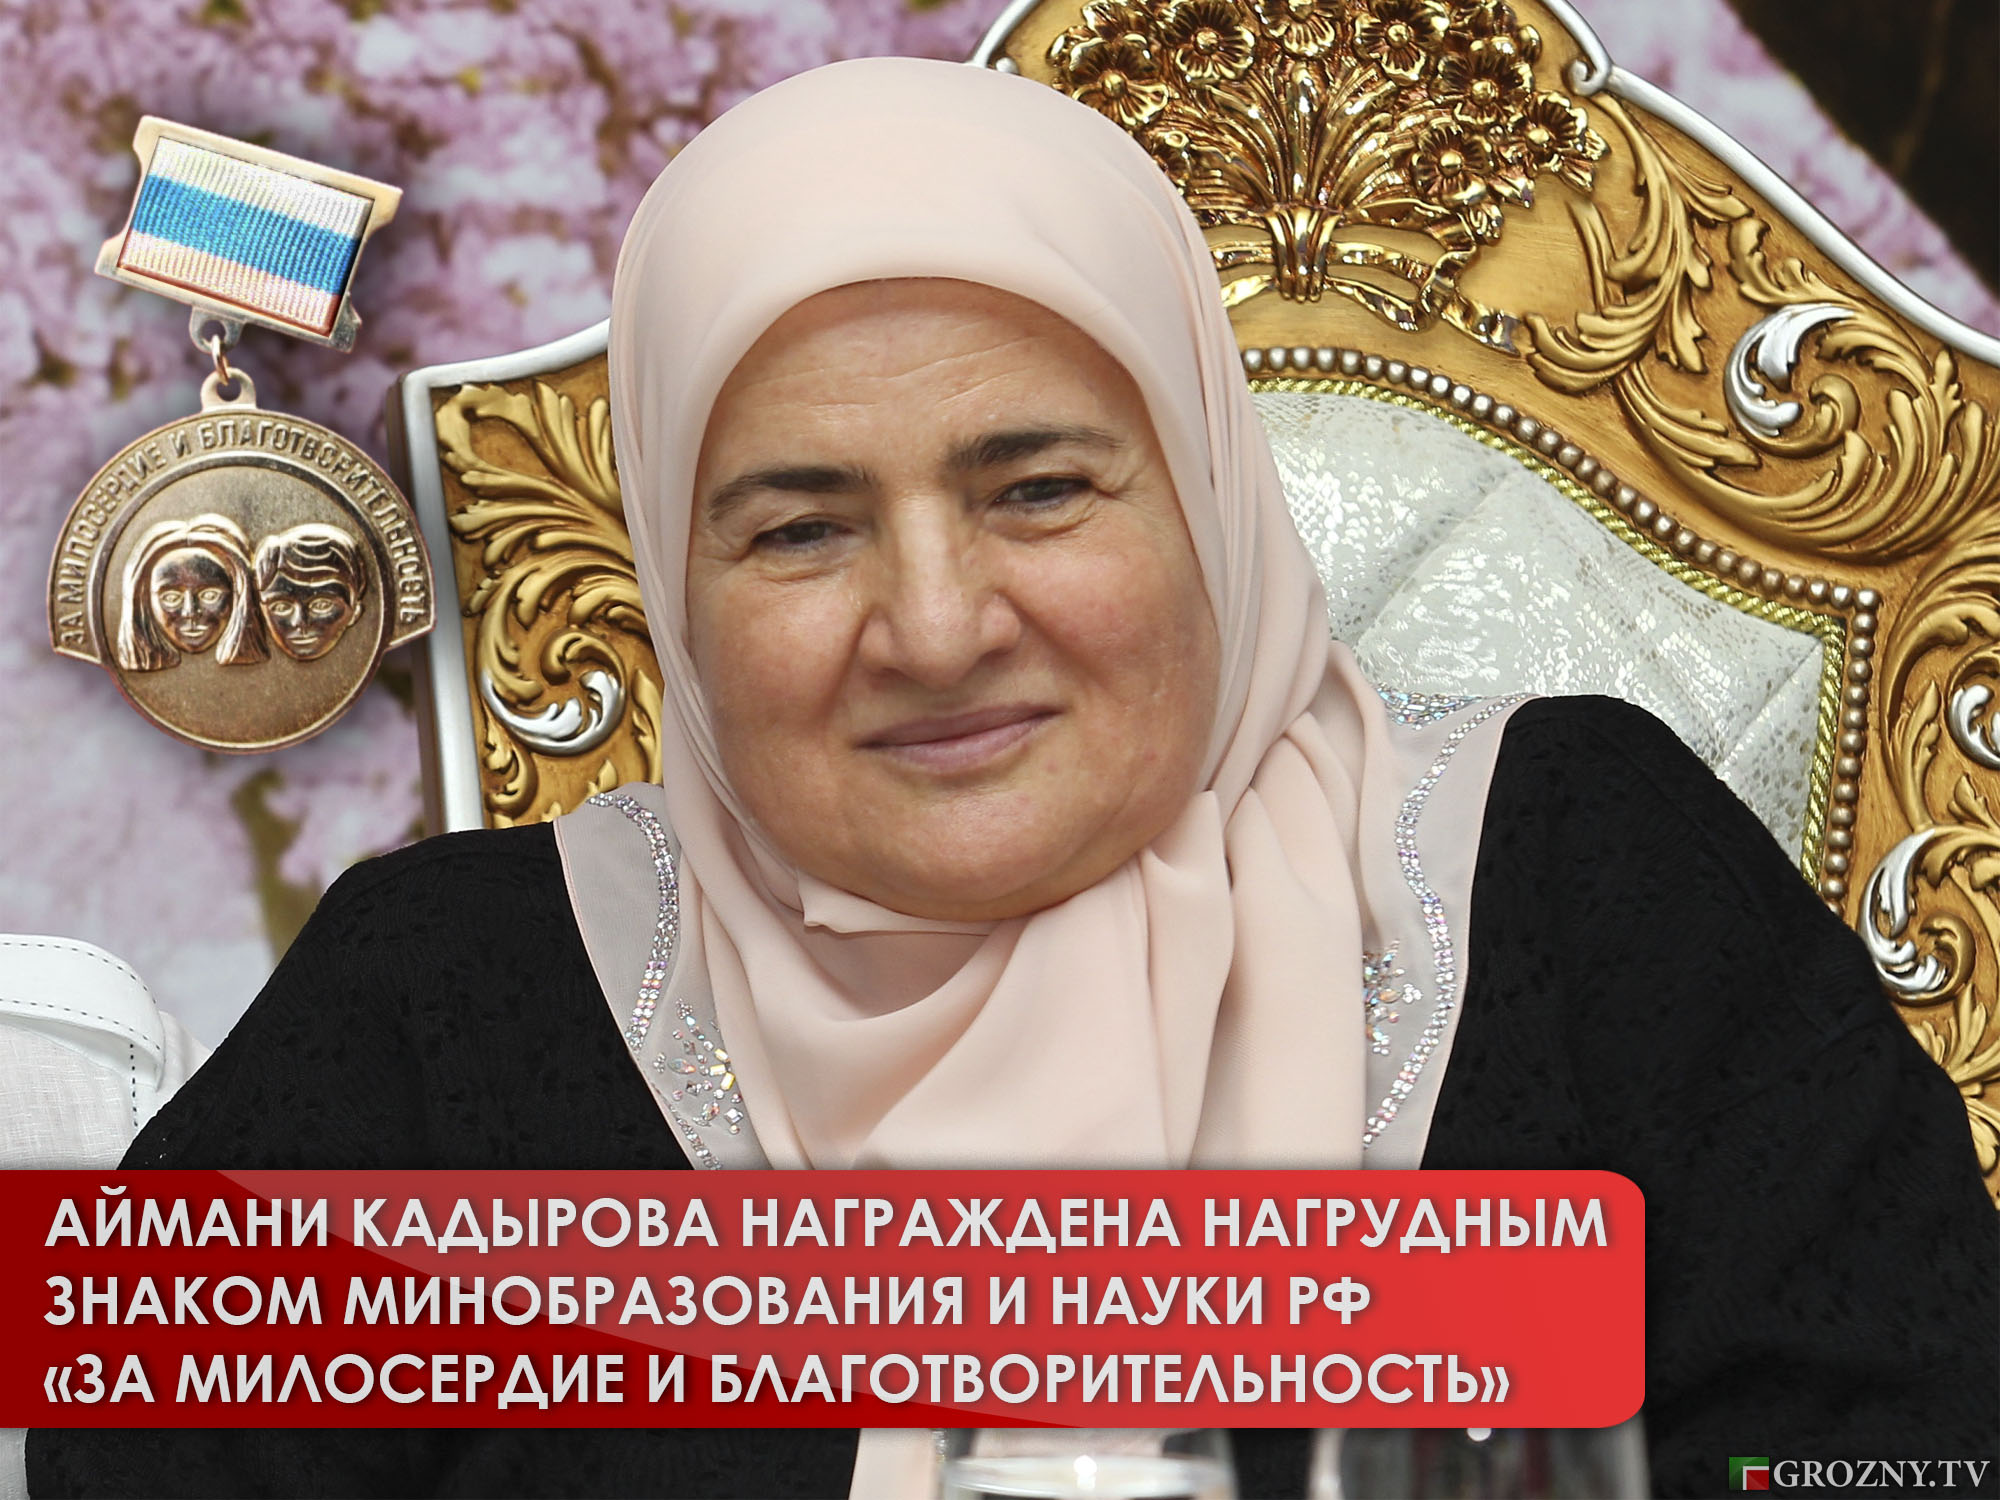 Аймани Кадырова награждена Нагрудным знаком Минобразования и науки РФ «За милосердие и благотворительность»